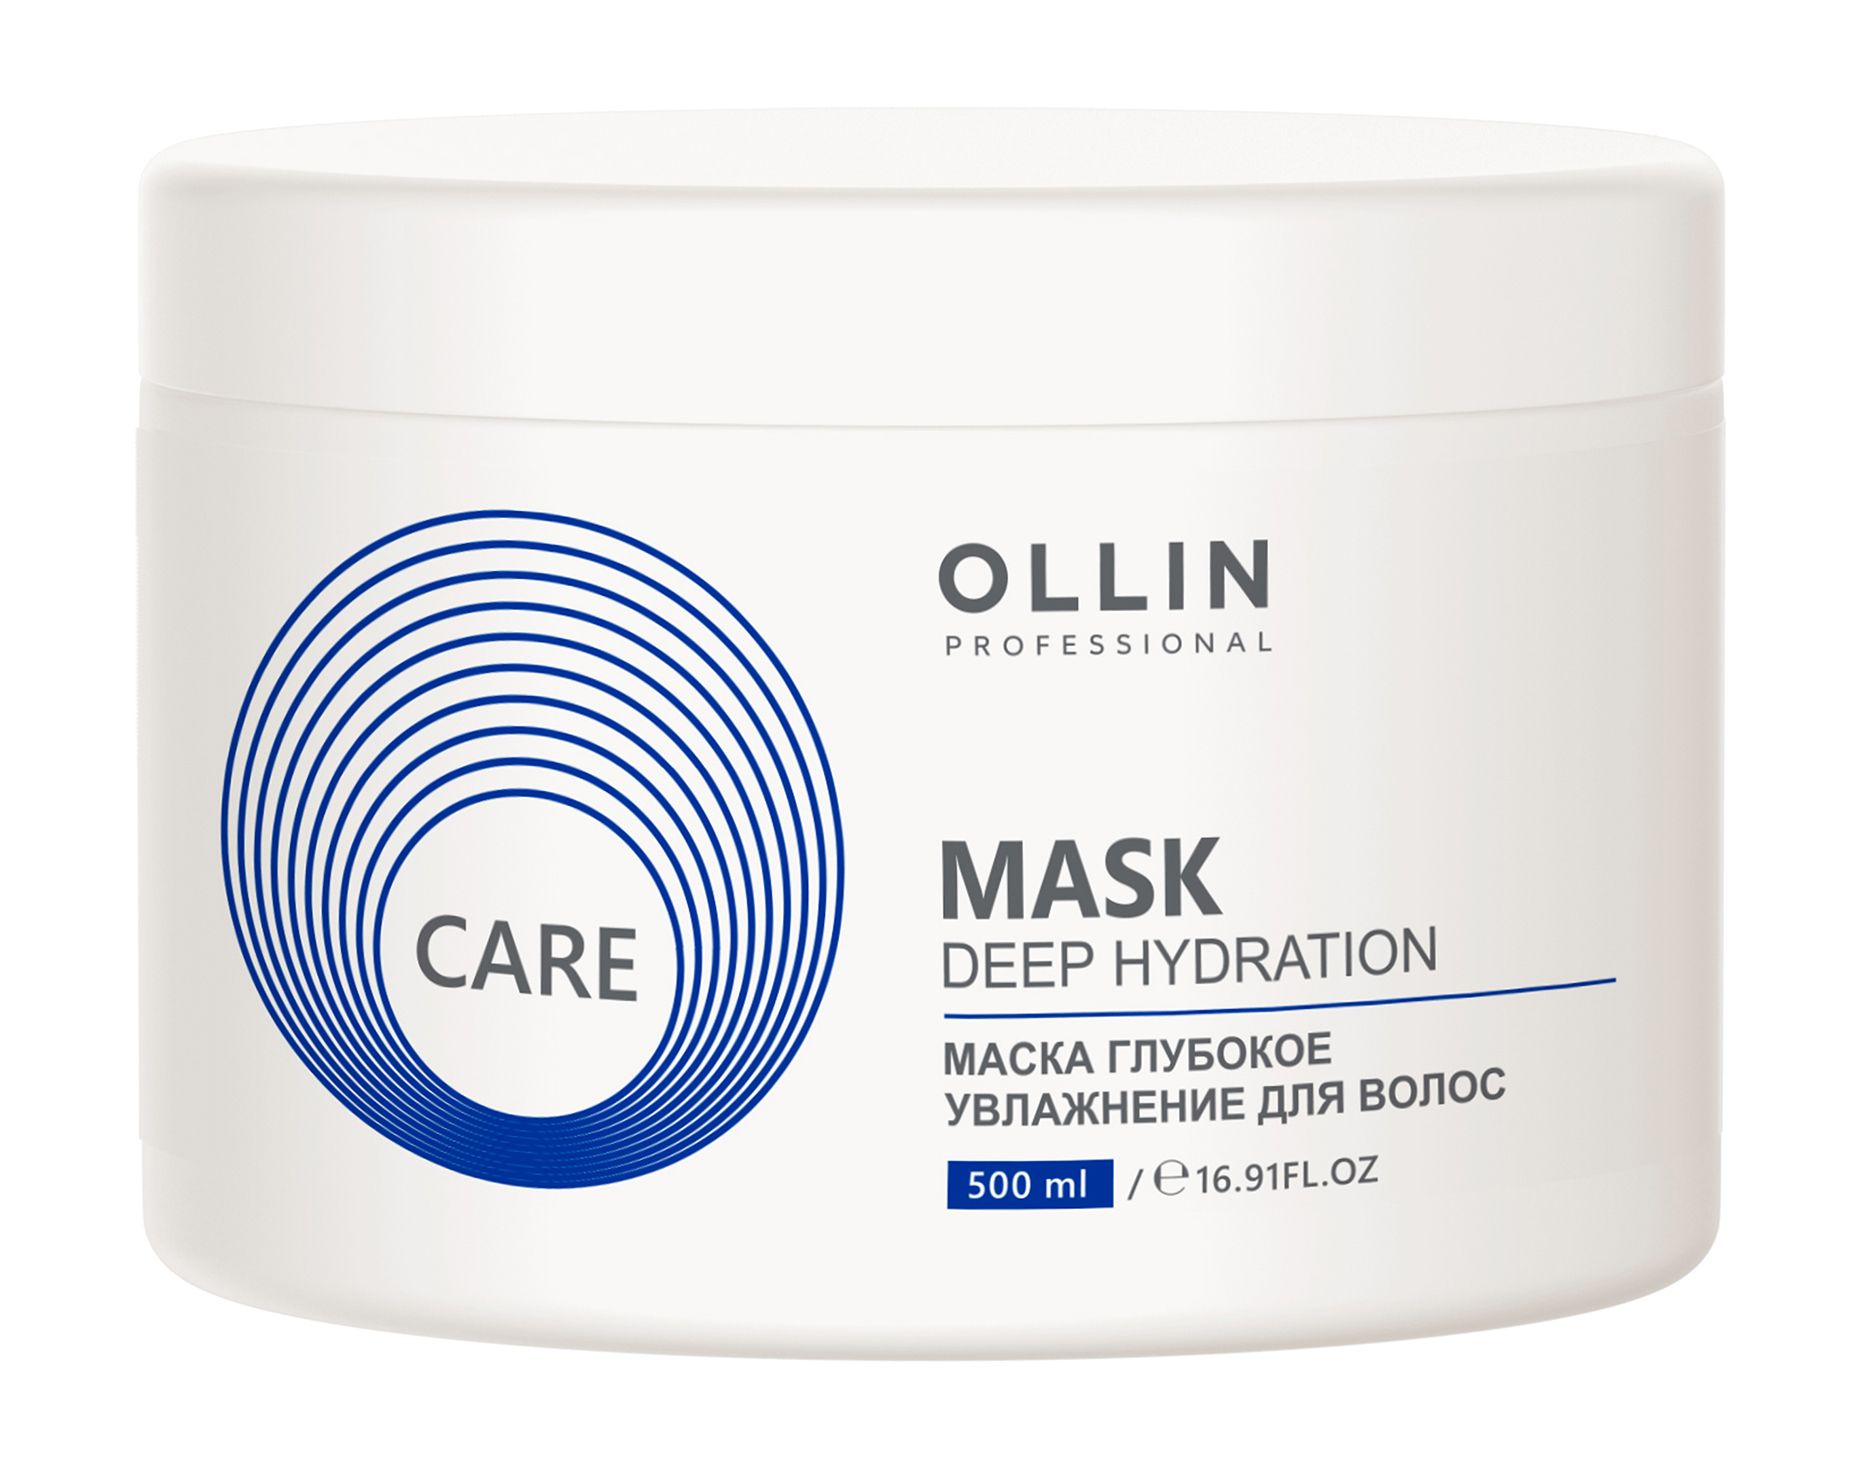 Увлажняющие маски для волос с маслами. Ollin Care маска глубокое увлажнение для волос 500мл. Оллин маска для глубокого увлажнения 500 мл. Маска Олин Профешинал. Маска Оллин каре увлажняющие.